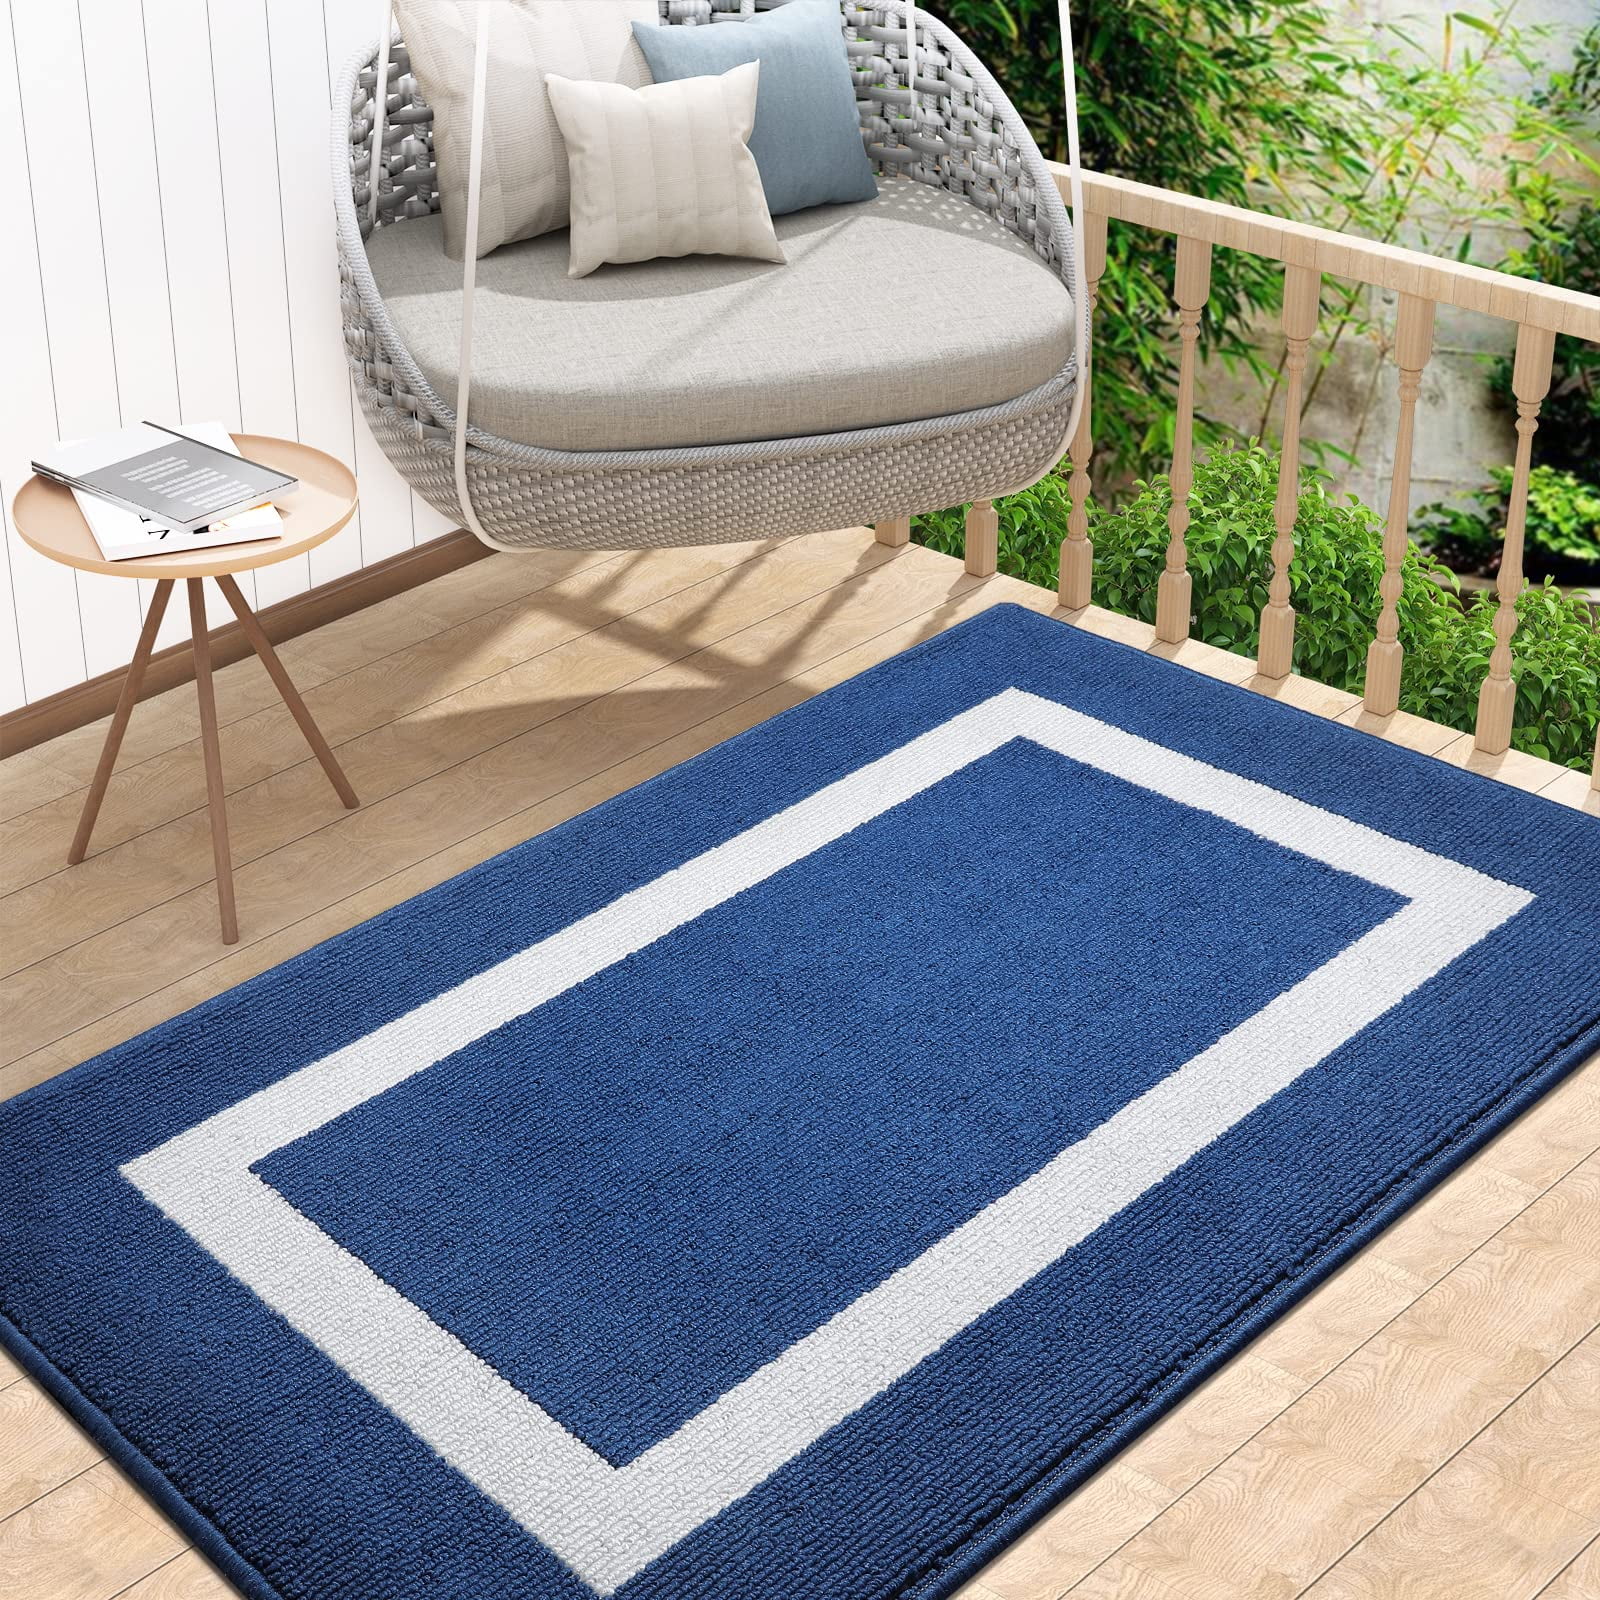 Brynsley Non-Slip Indoor / Outdoor Door Mat Ebern Designs Mat Size: 20 W x 32 L, Color: Blue